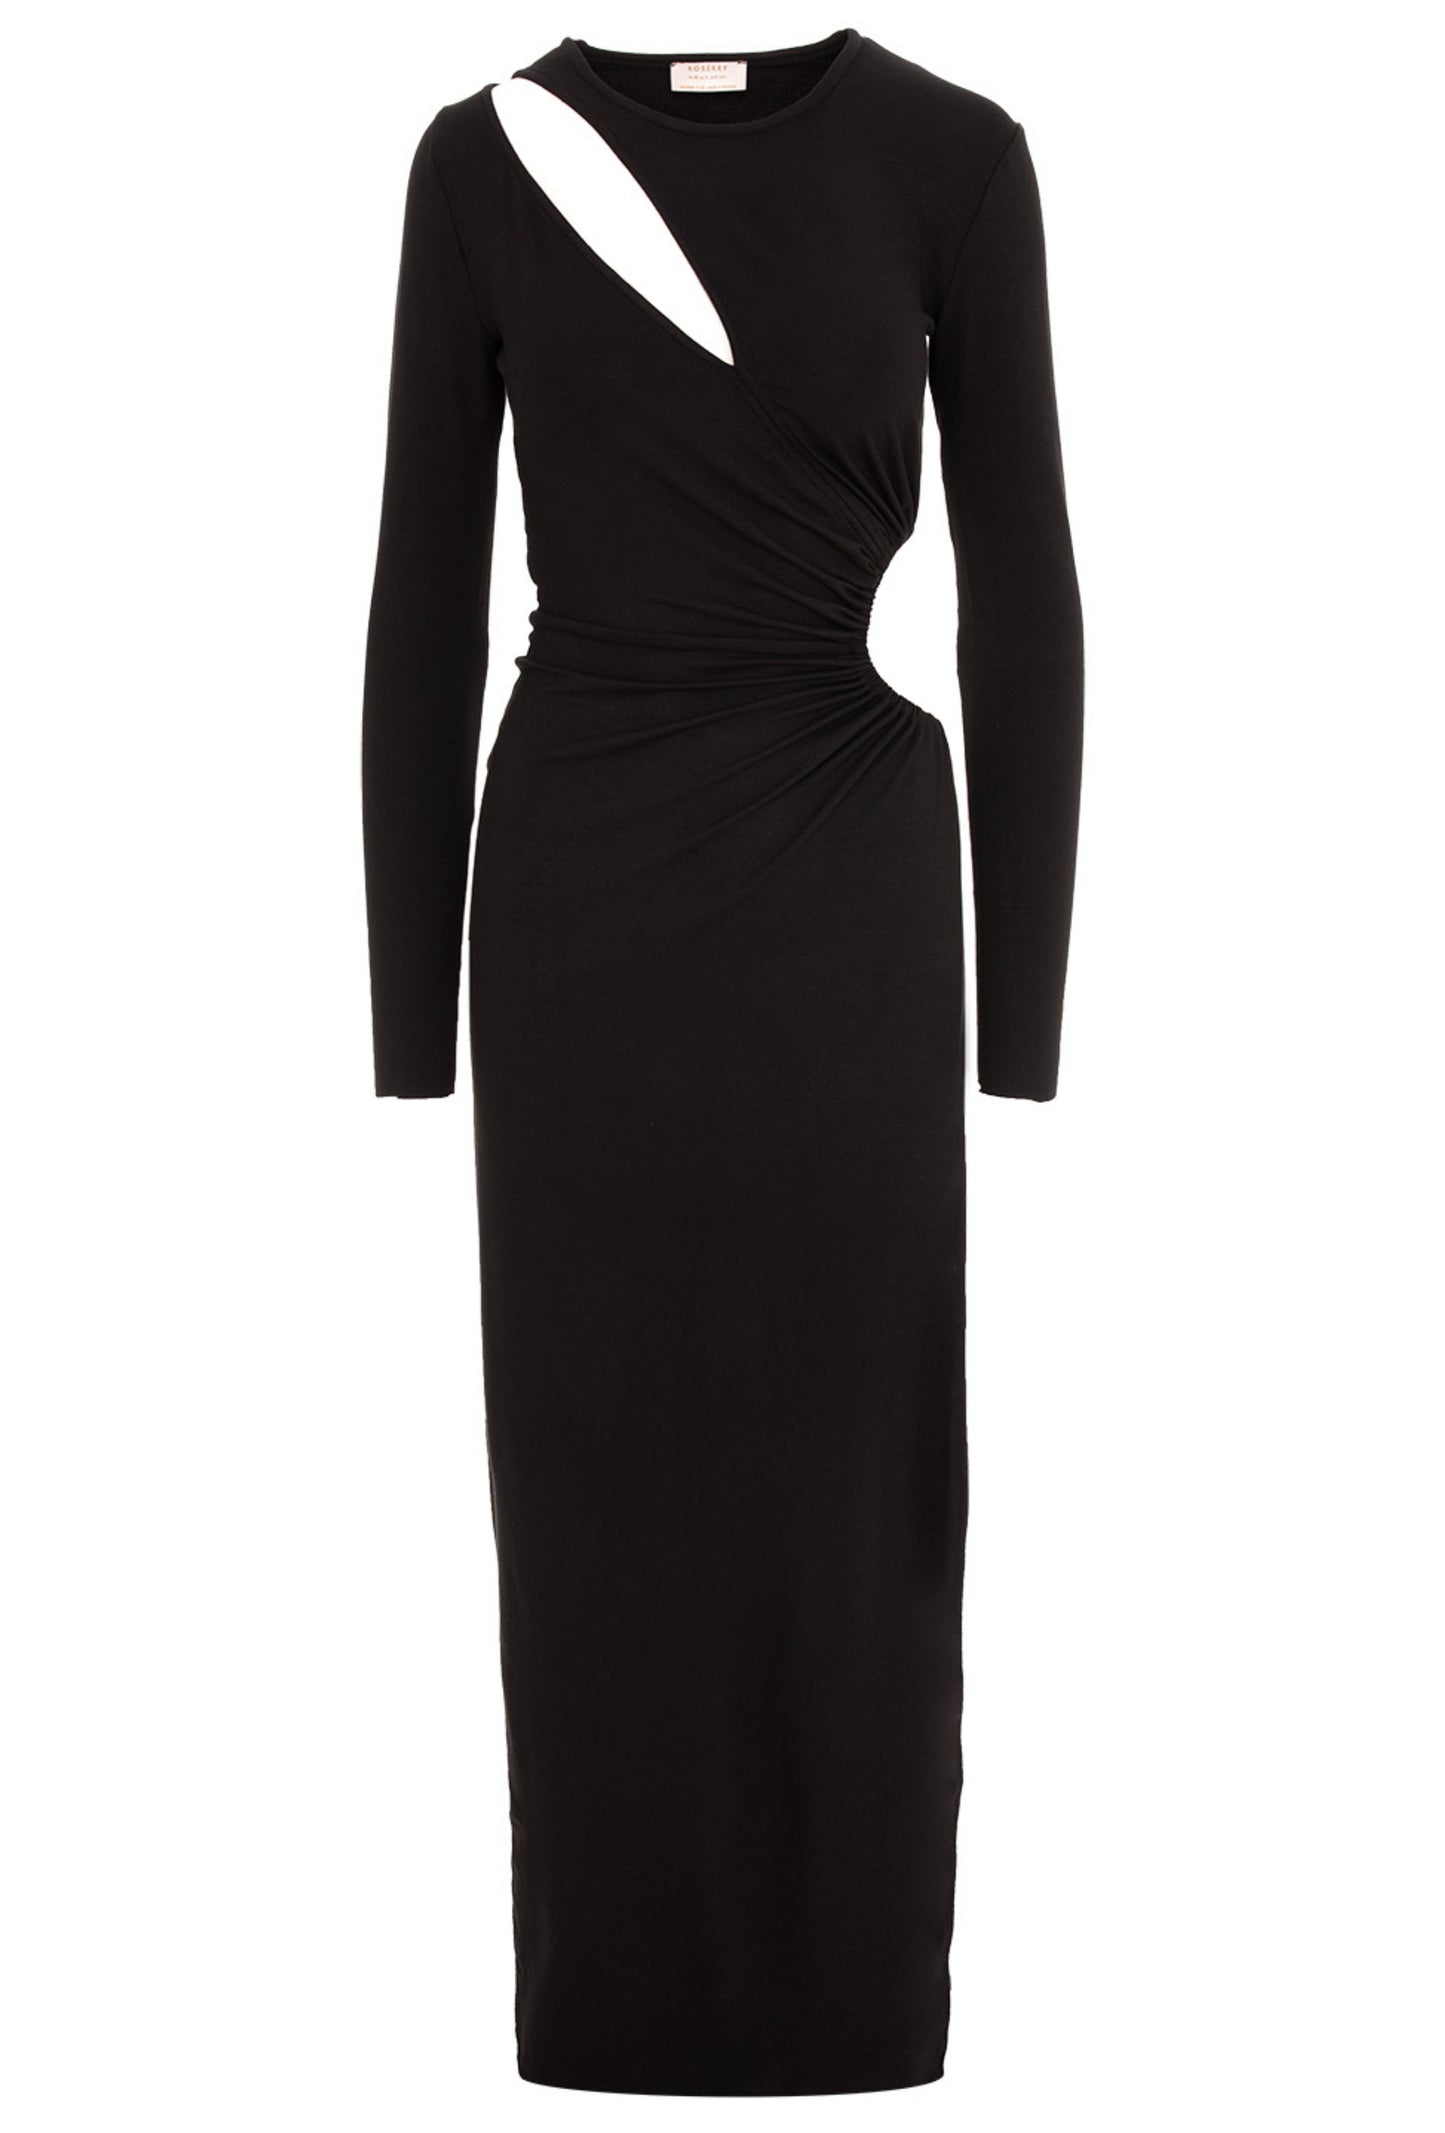 Mykonos Jersey Cut Out Maxi Dresss In Black